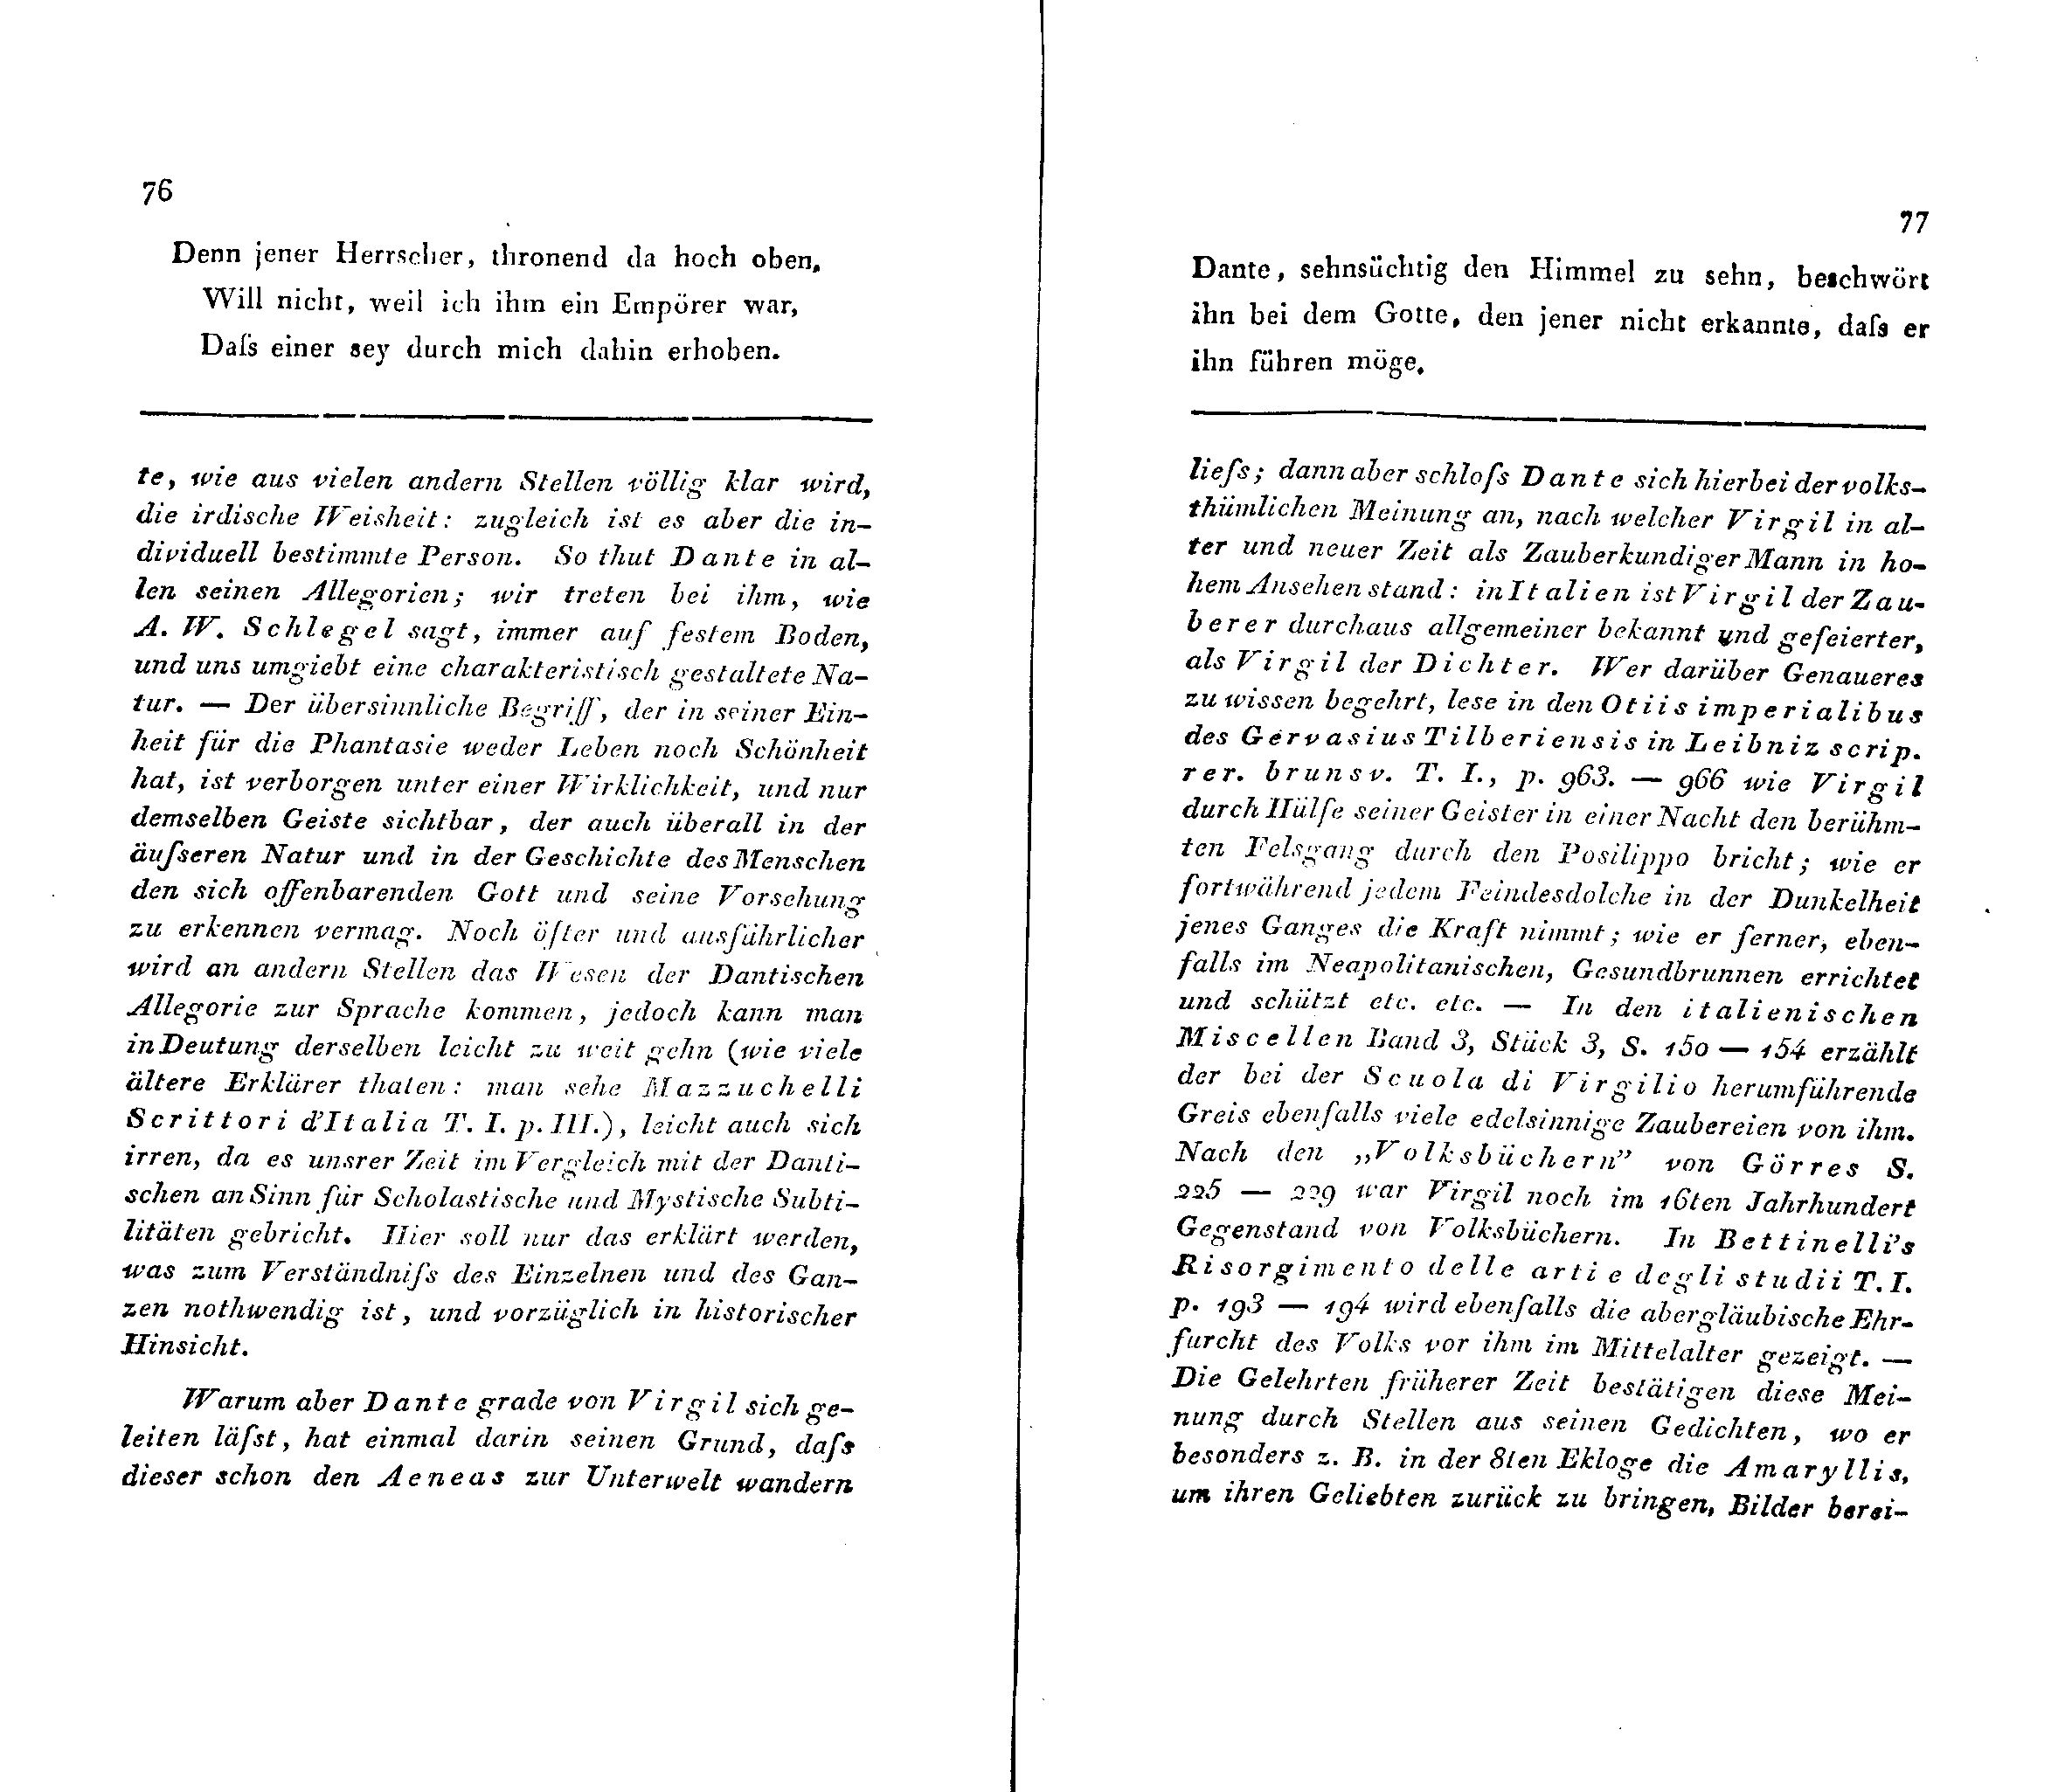 Ueber Dante Alighieri, seine Zeit und seine Divina Comedia [1] (1824) | 6. (76-77) Main body of text